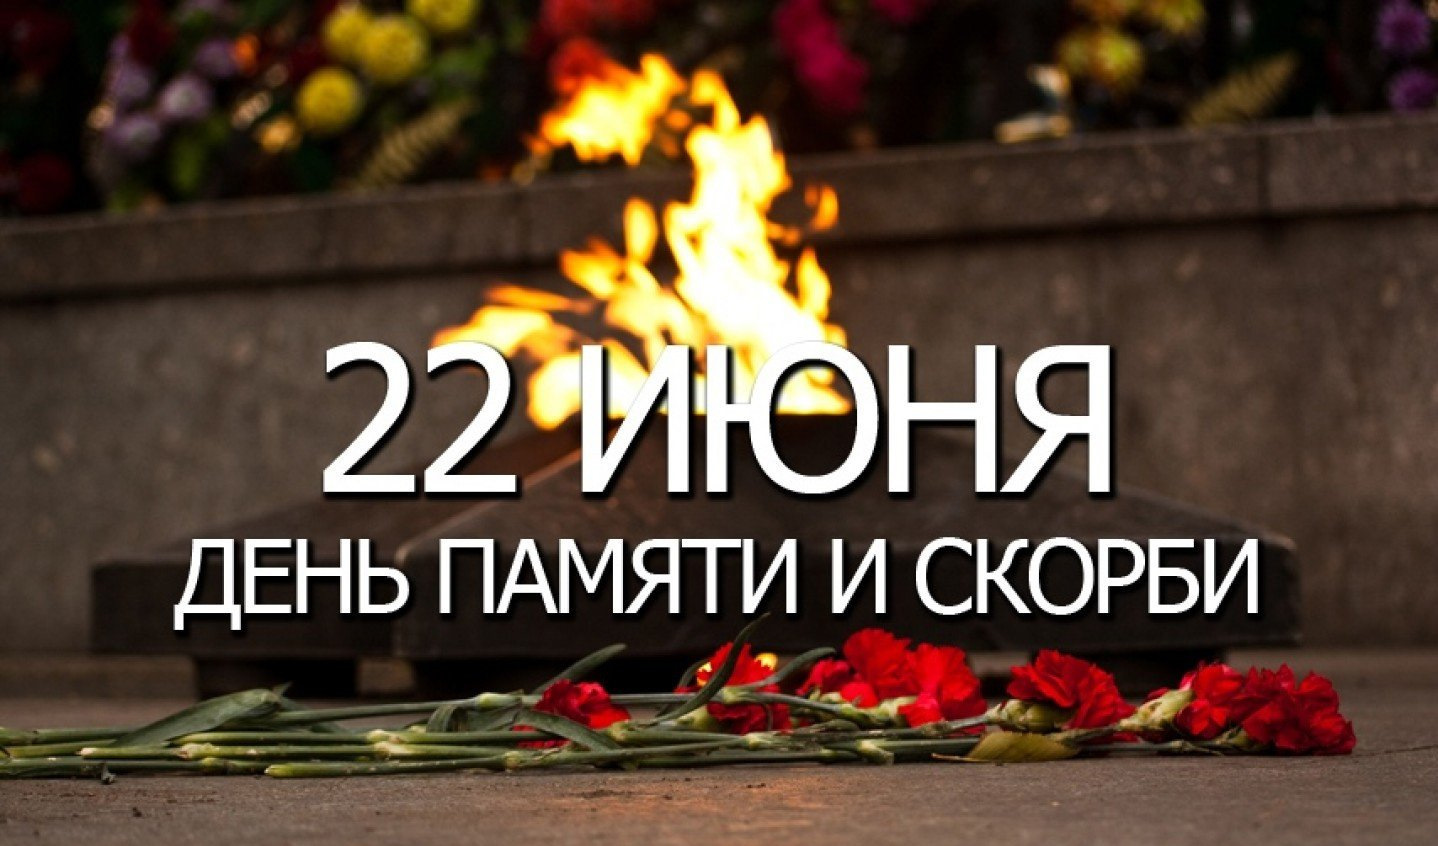 22 июня день начало великой отечественной. День памяти и скорби. 22 Июня день памяти. День памяти и скорби — день начала Великой Отечественной войны. День скорби 22 июня.